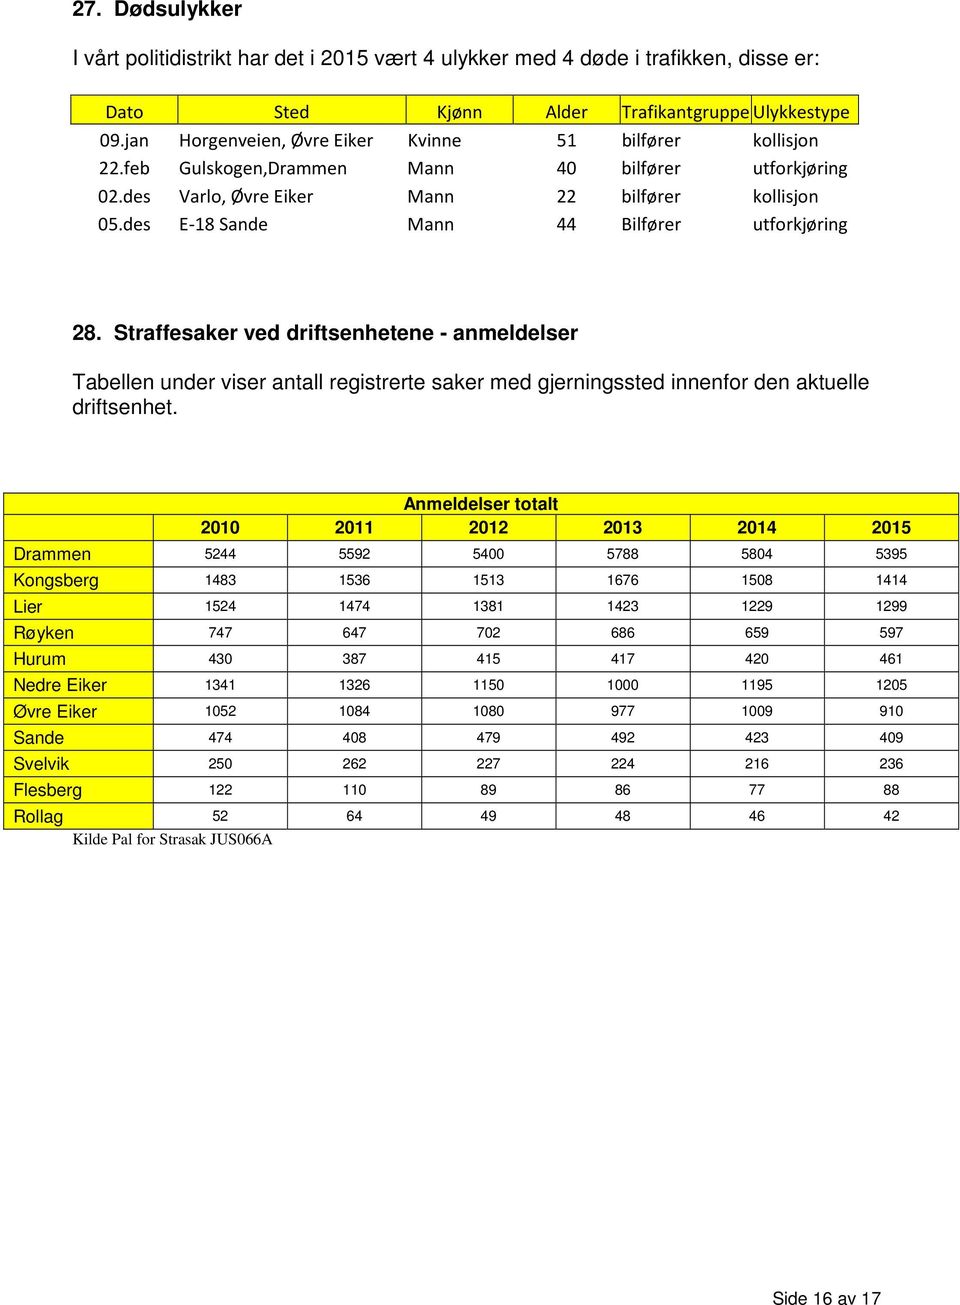 des E-18 Sande Mann 44 Bilfører utforkjøring 28. Straffesaker ved driftsenhetene - anmeldelser Tabellen under viser antall registrerte saker med gjerningssted innenfor den aktuelle driftsenhet.